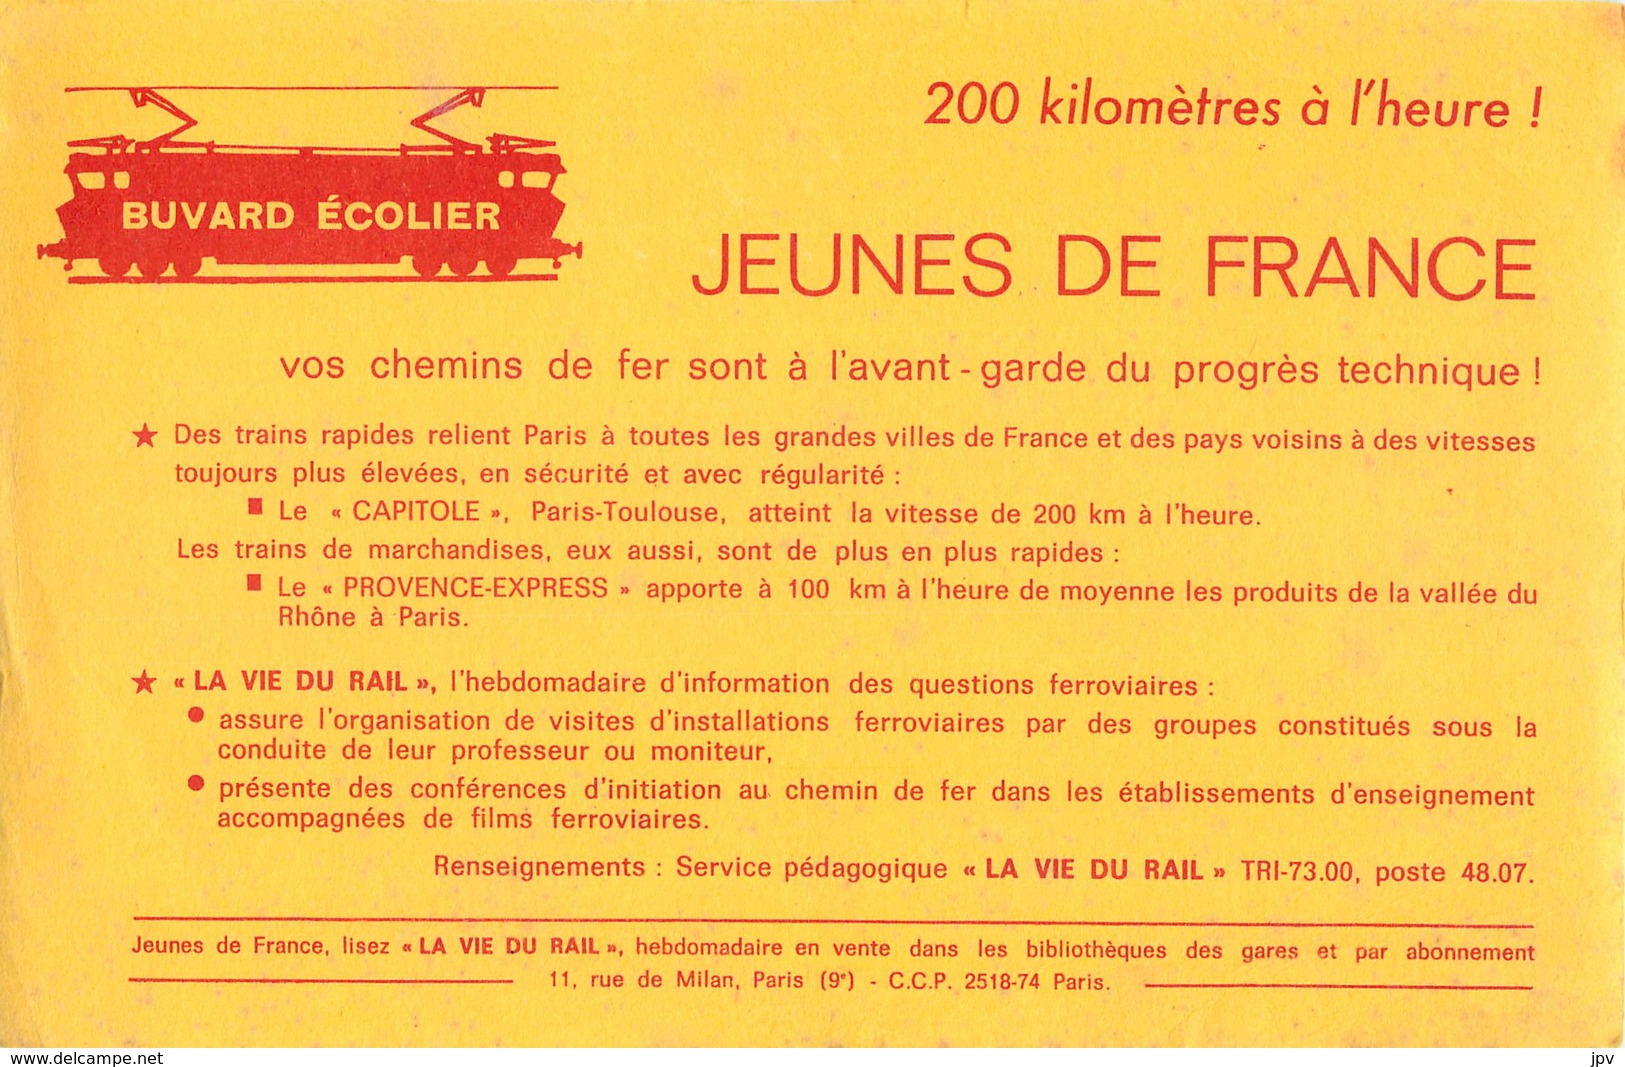 BUVARD ECOLIER - JEUNES DE FRANCE  - LA VIE DU RAIL - LE CAPITOLE - PROVENCE-EXPRESS - Transport